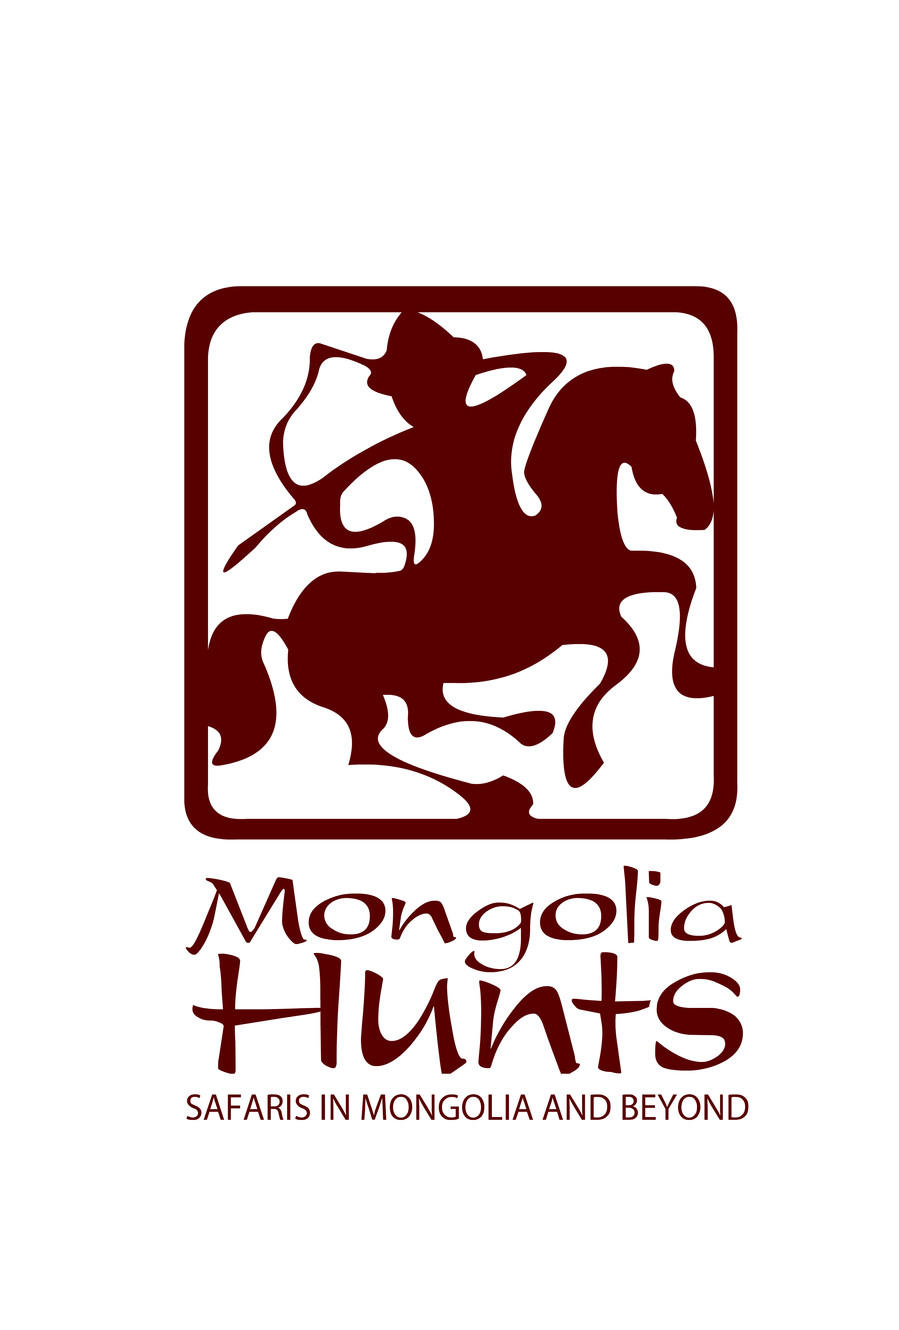 www.mongoliahunts.com